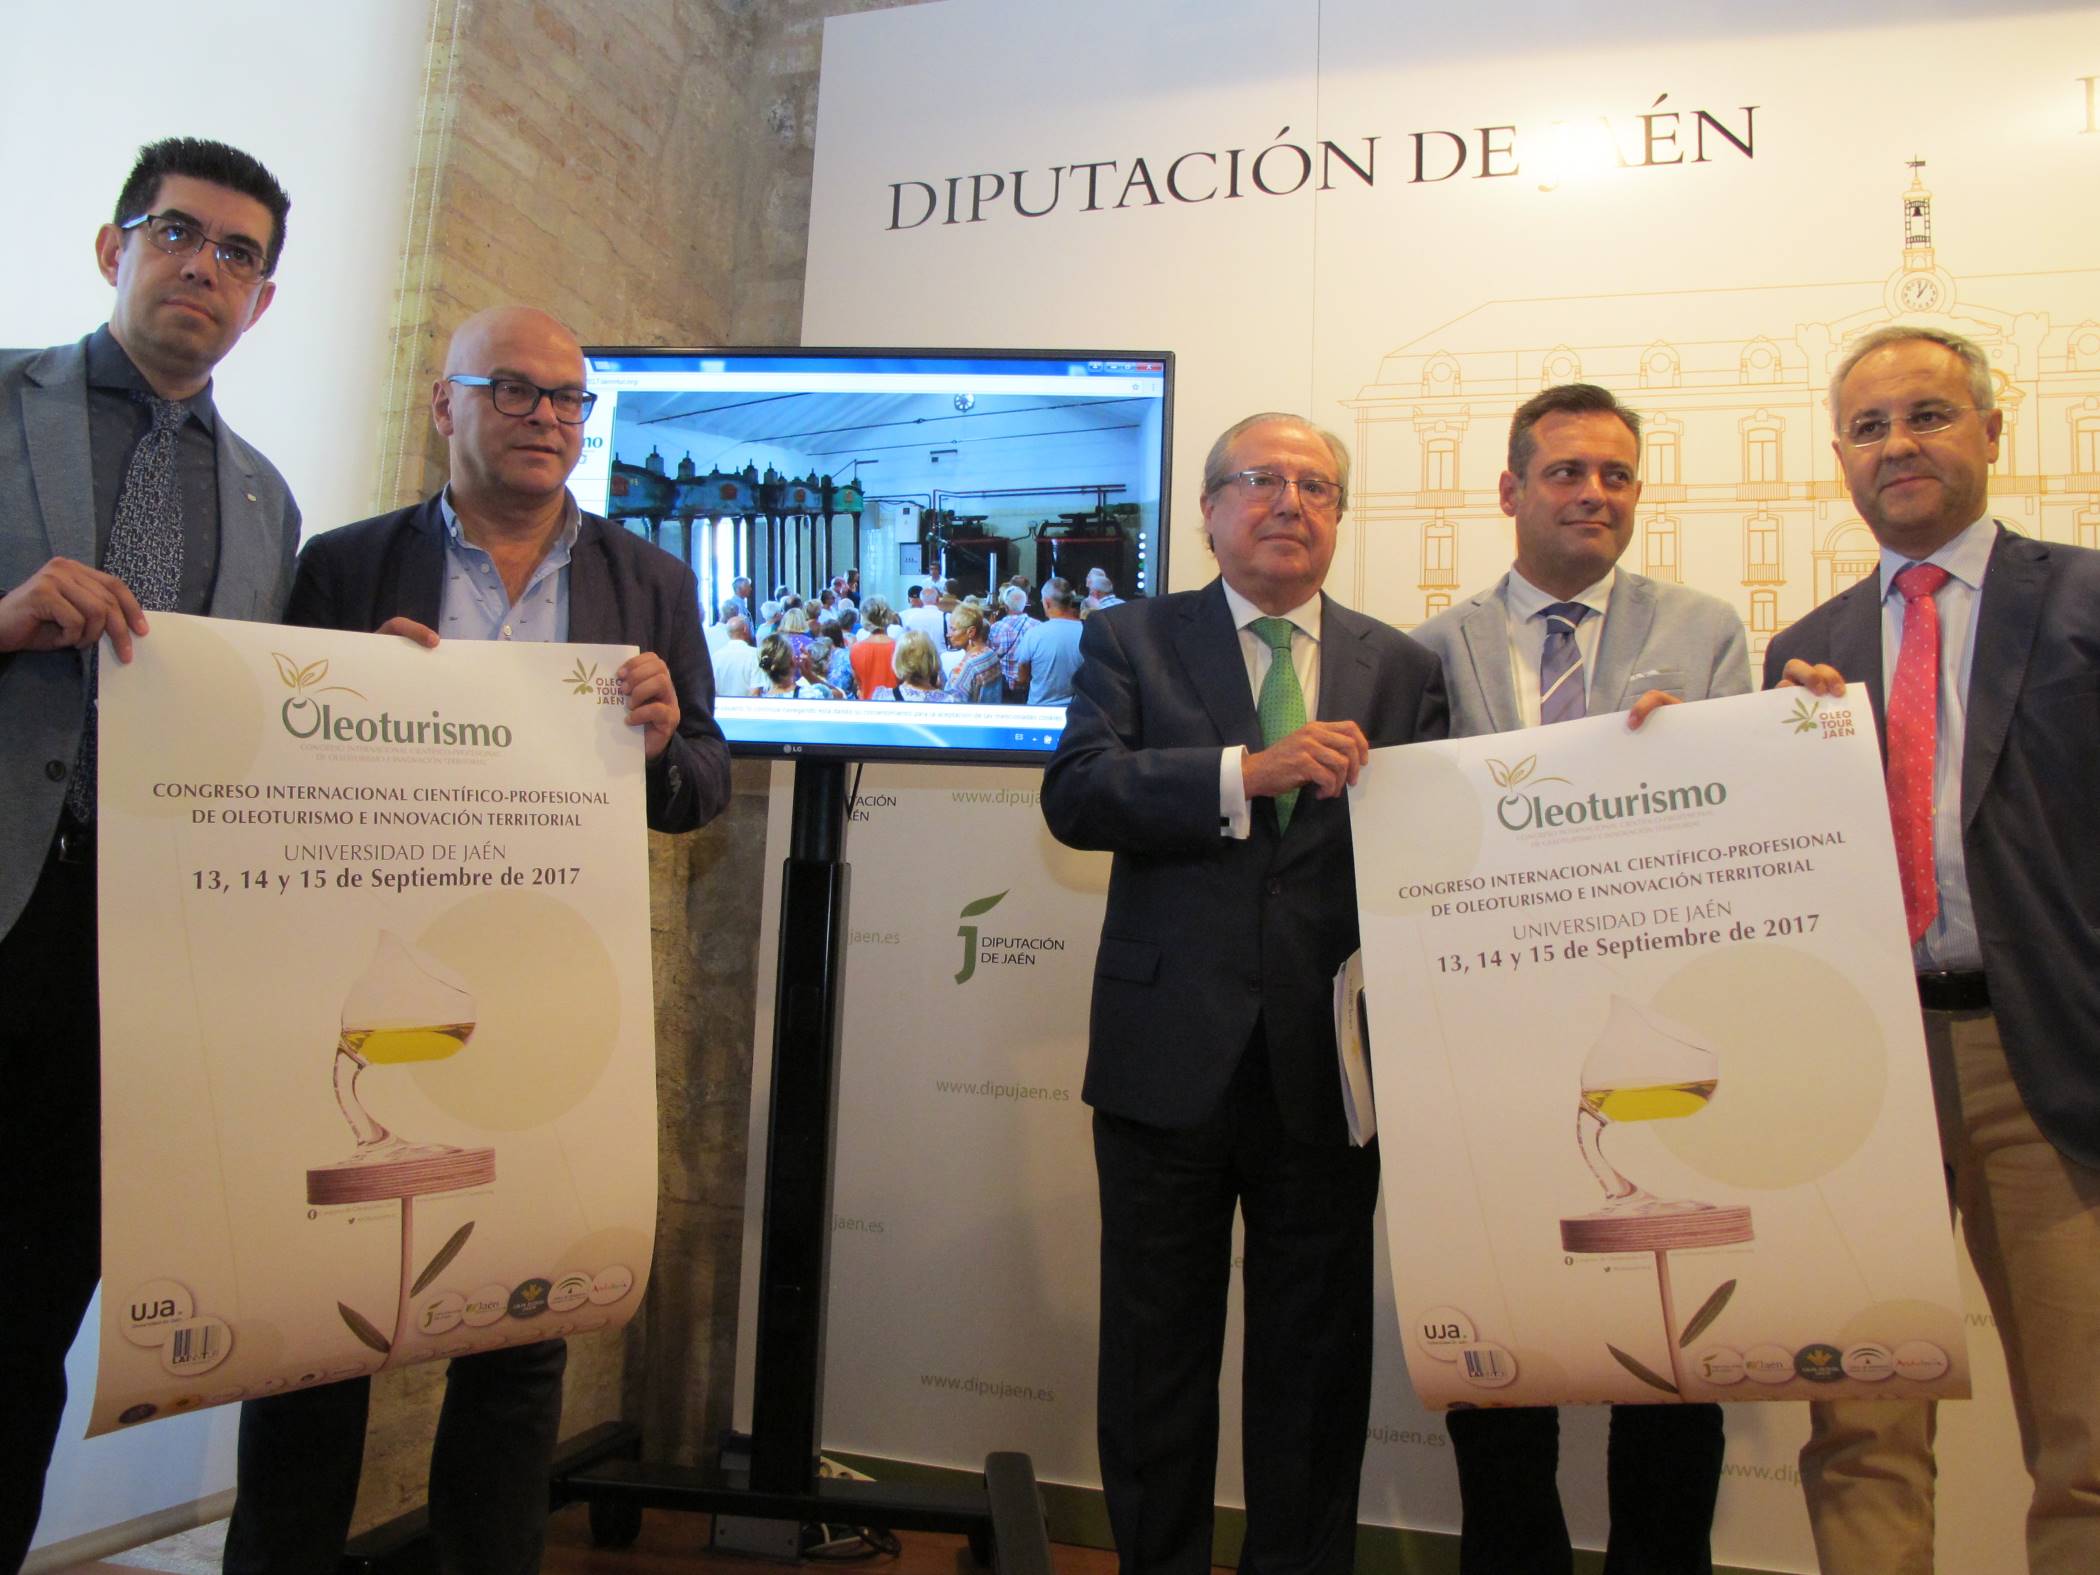 El Congreso Internacional de Oleoturismo se celebrará en septiembre para conocer las posibilidades futuras del sector